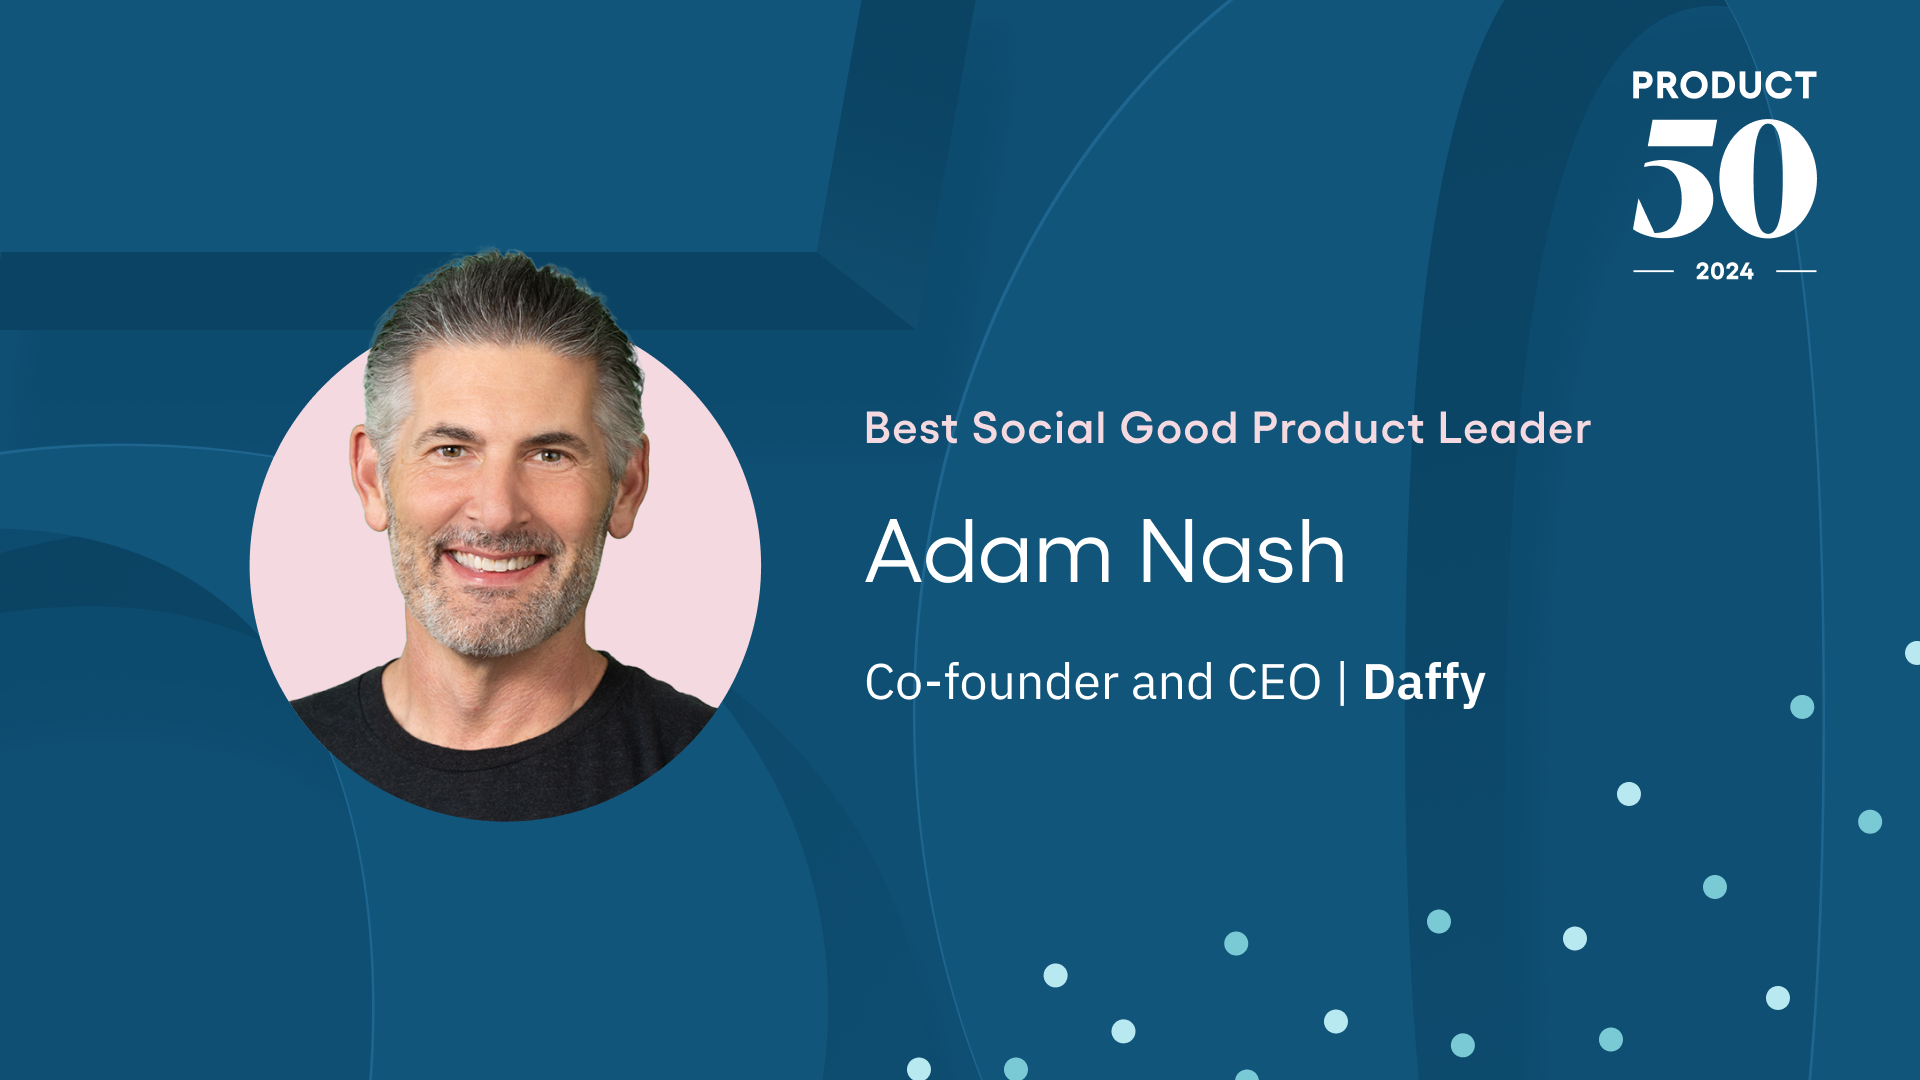 Product 50 Winner: Adam Nash